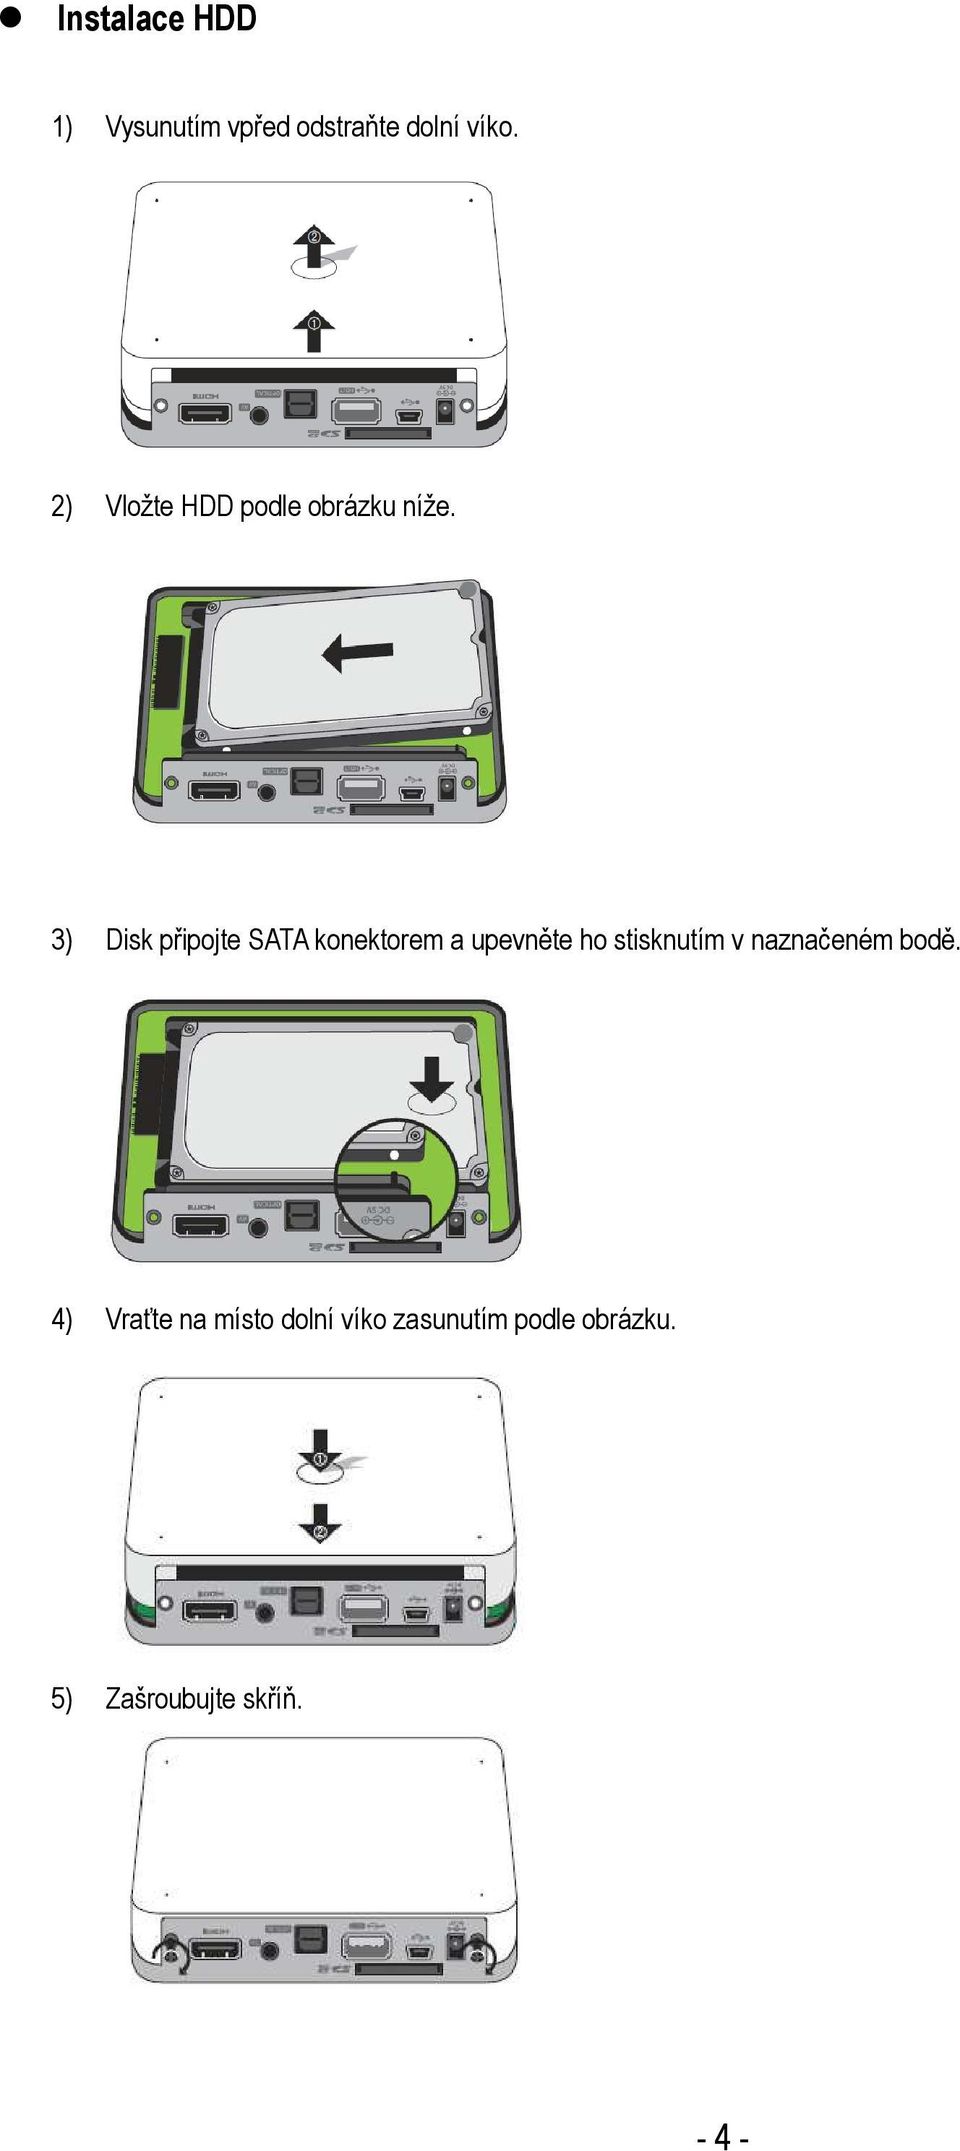 3) Disk připojte SATA konektorem a upevněte ho stisknutím v